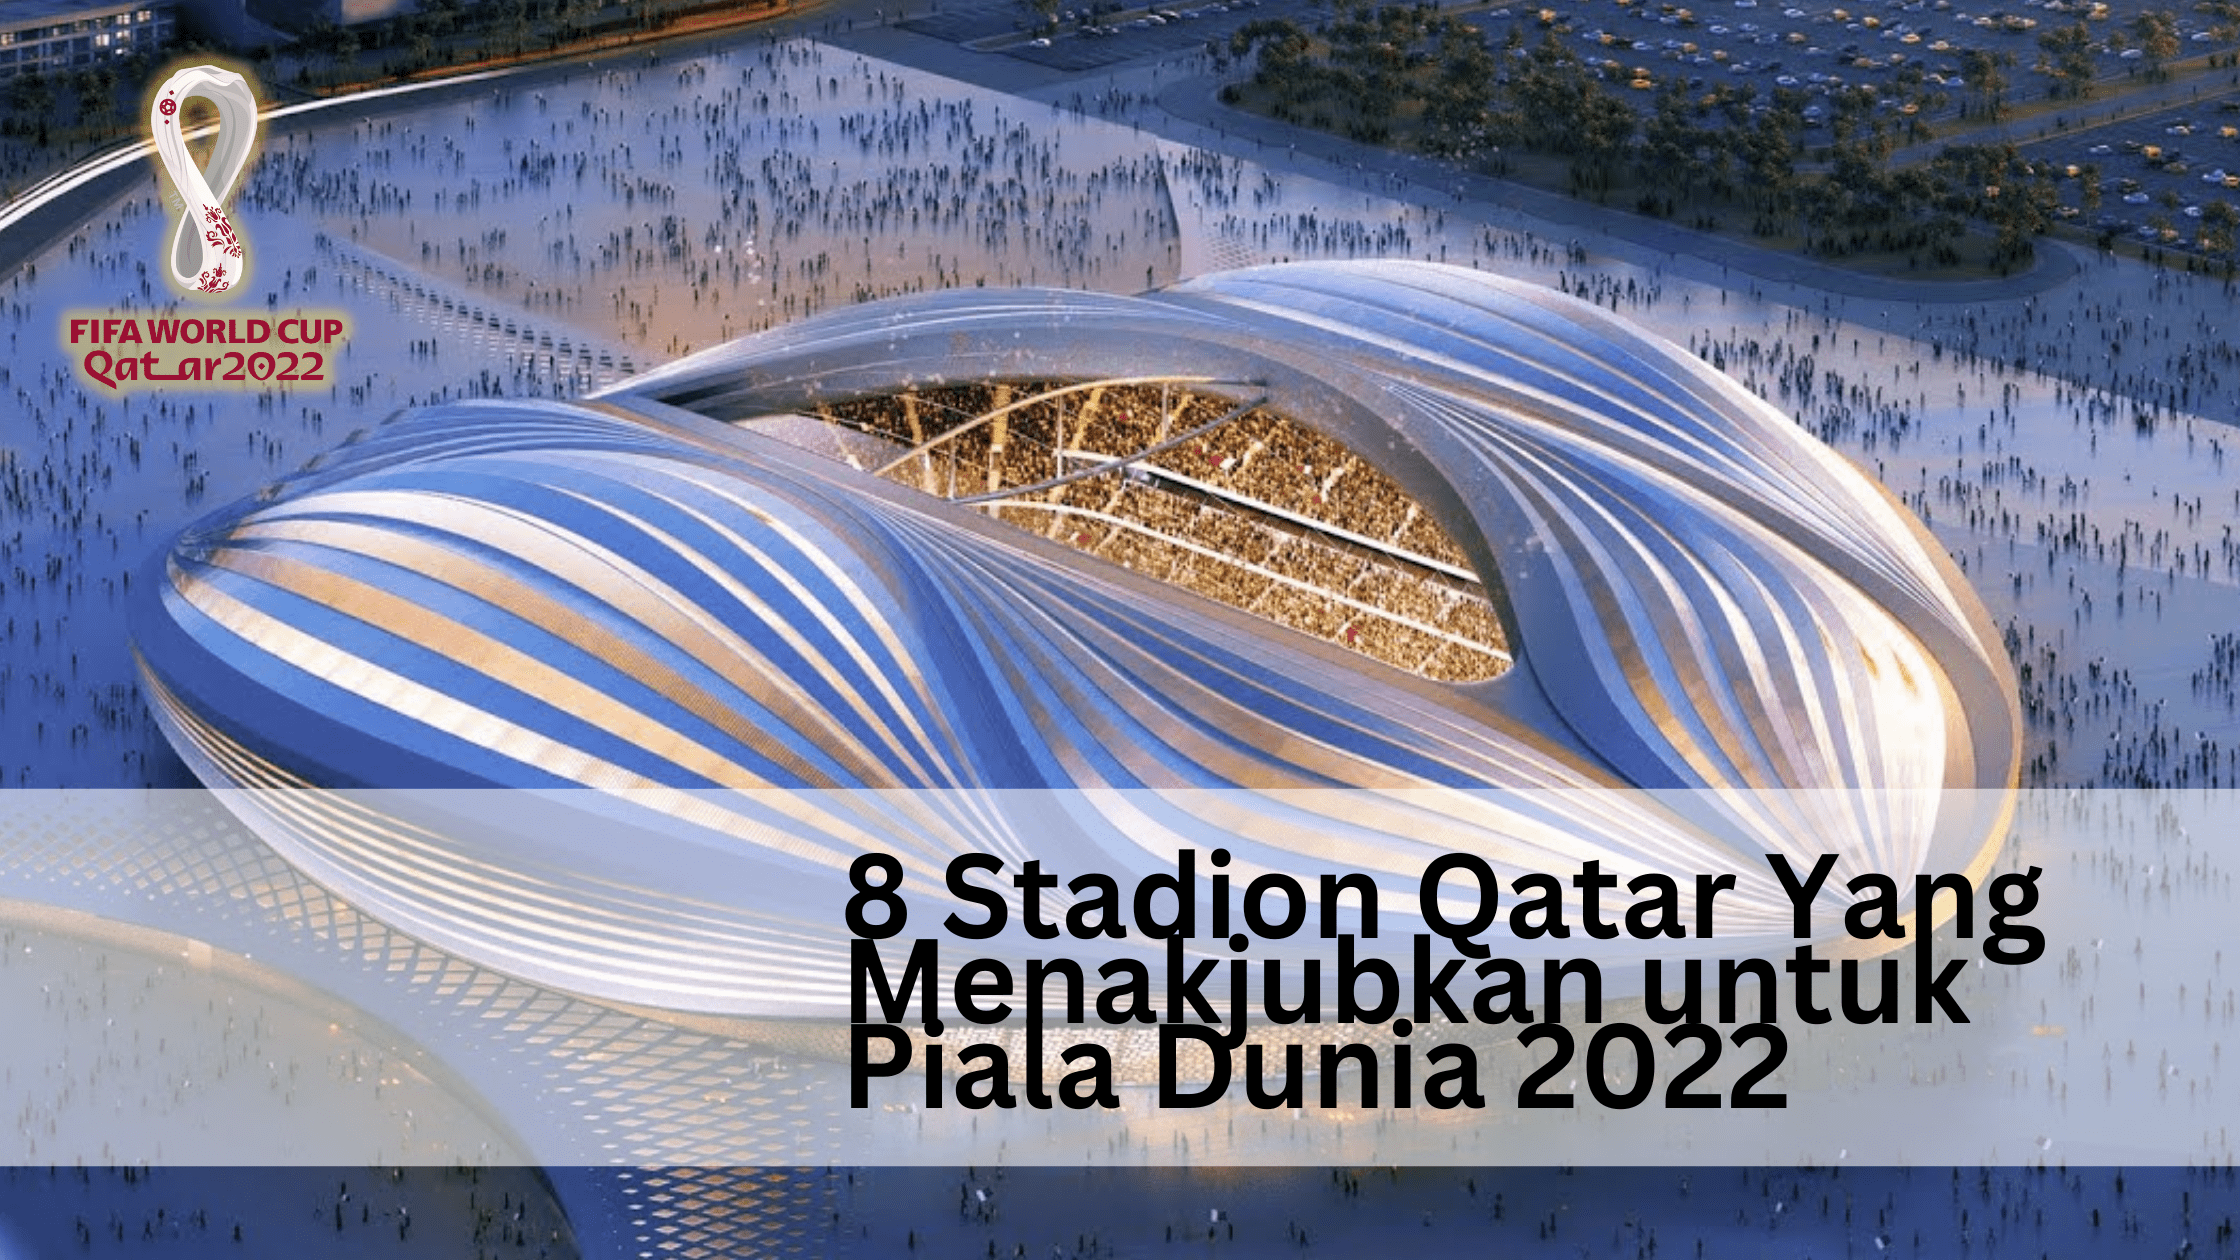 8 Stadion Qatar Yang Menakjubkan untuk Piala Dunia 2022